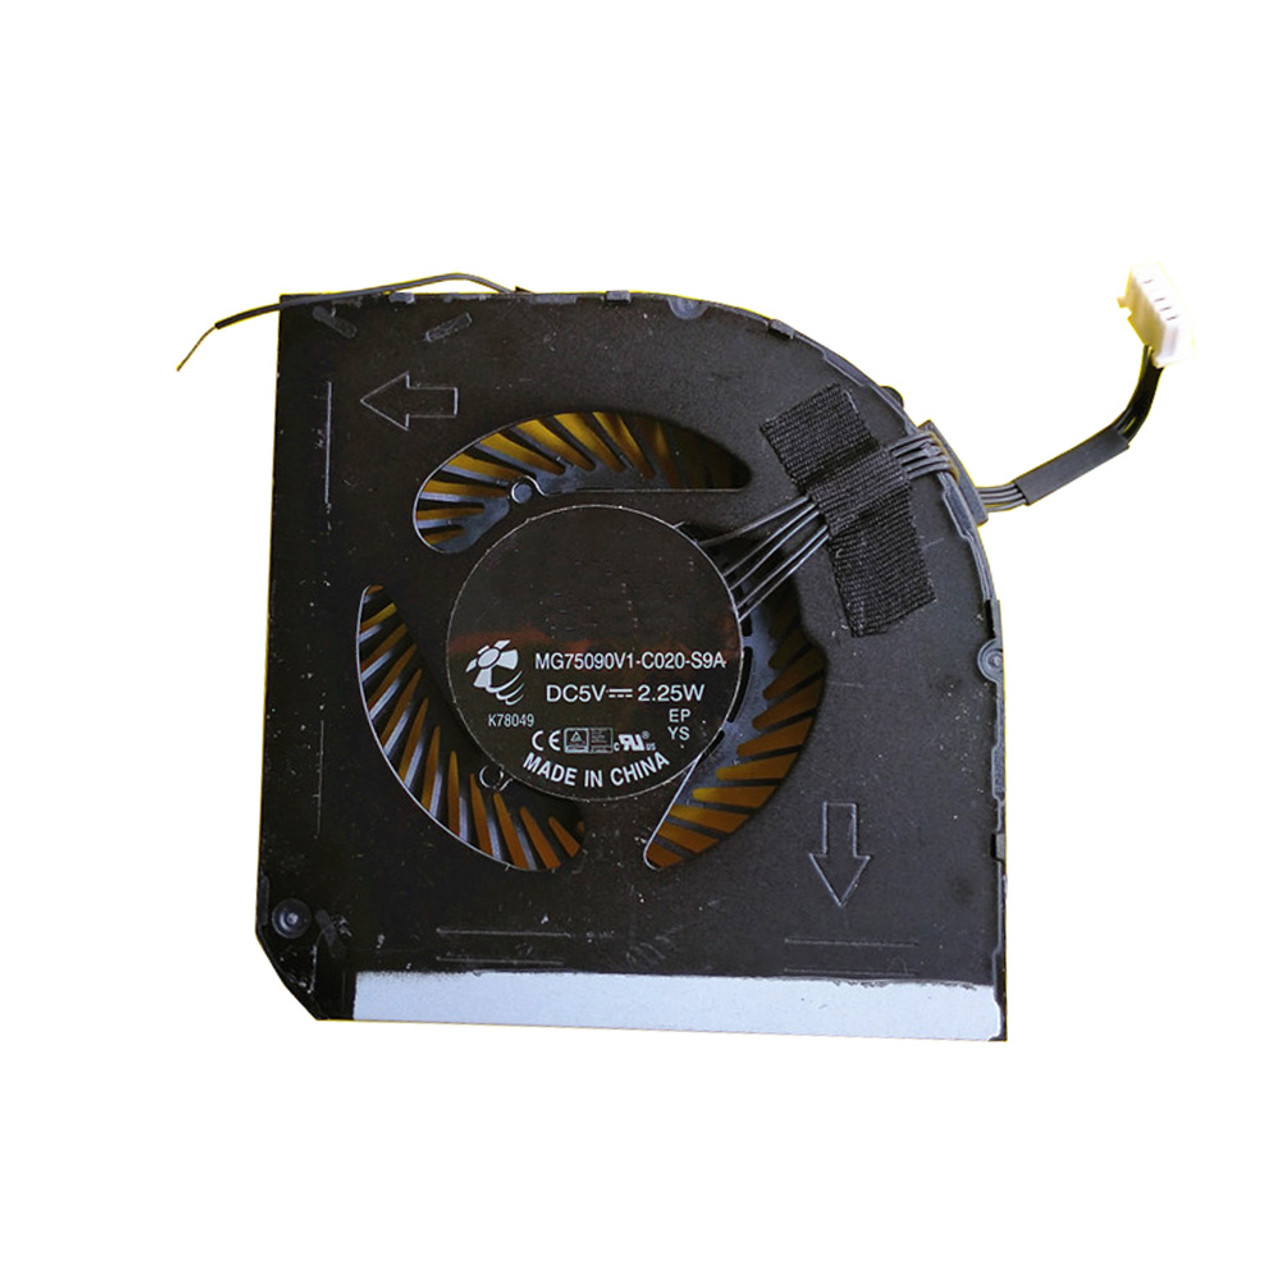 Lyn Fortolke grænseflade Laptop GPU Cooling Fan For Lenovo ThinkPad P50 P51 MG75090V1-C020-S9A DC5V  2.25W New - Linda parts